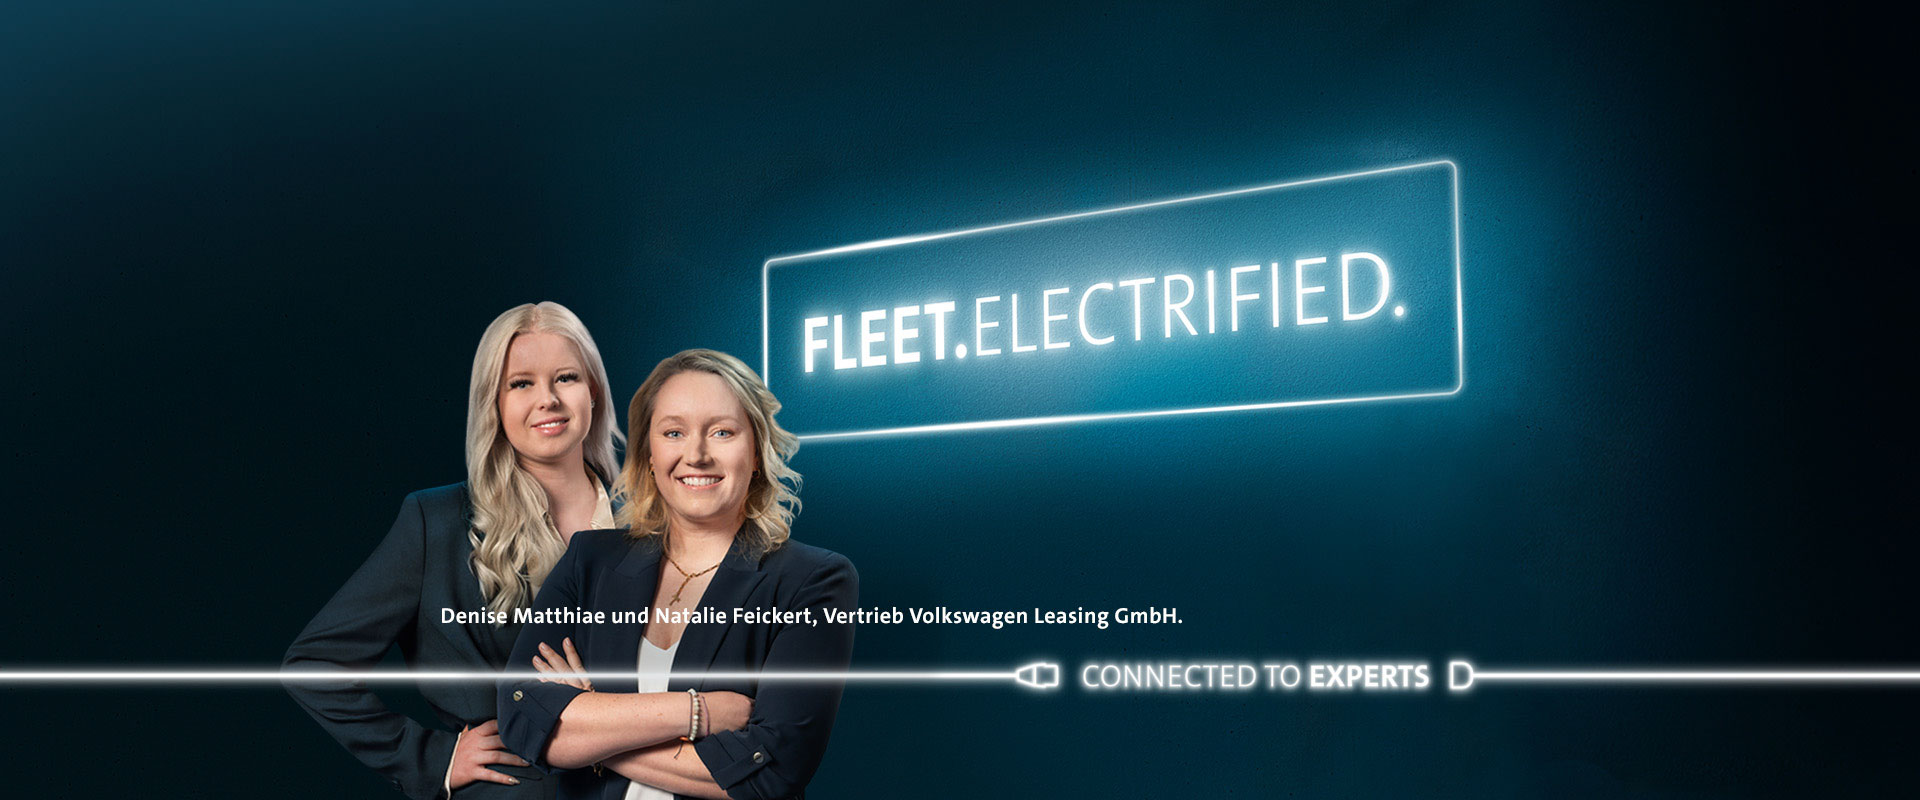 Denise Matthiae und Natalie Feickert, Vertrieb Volkswagen Leasing GmbH.